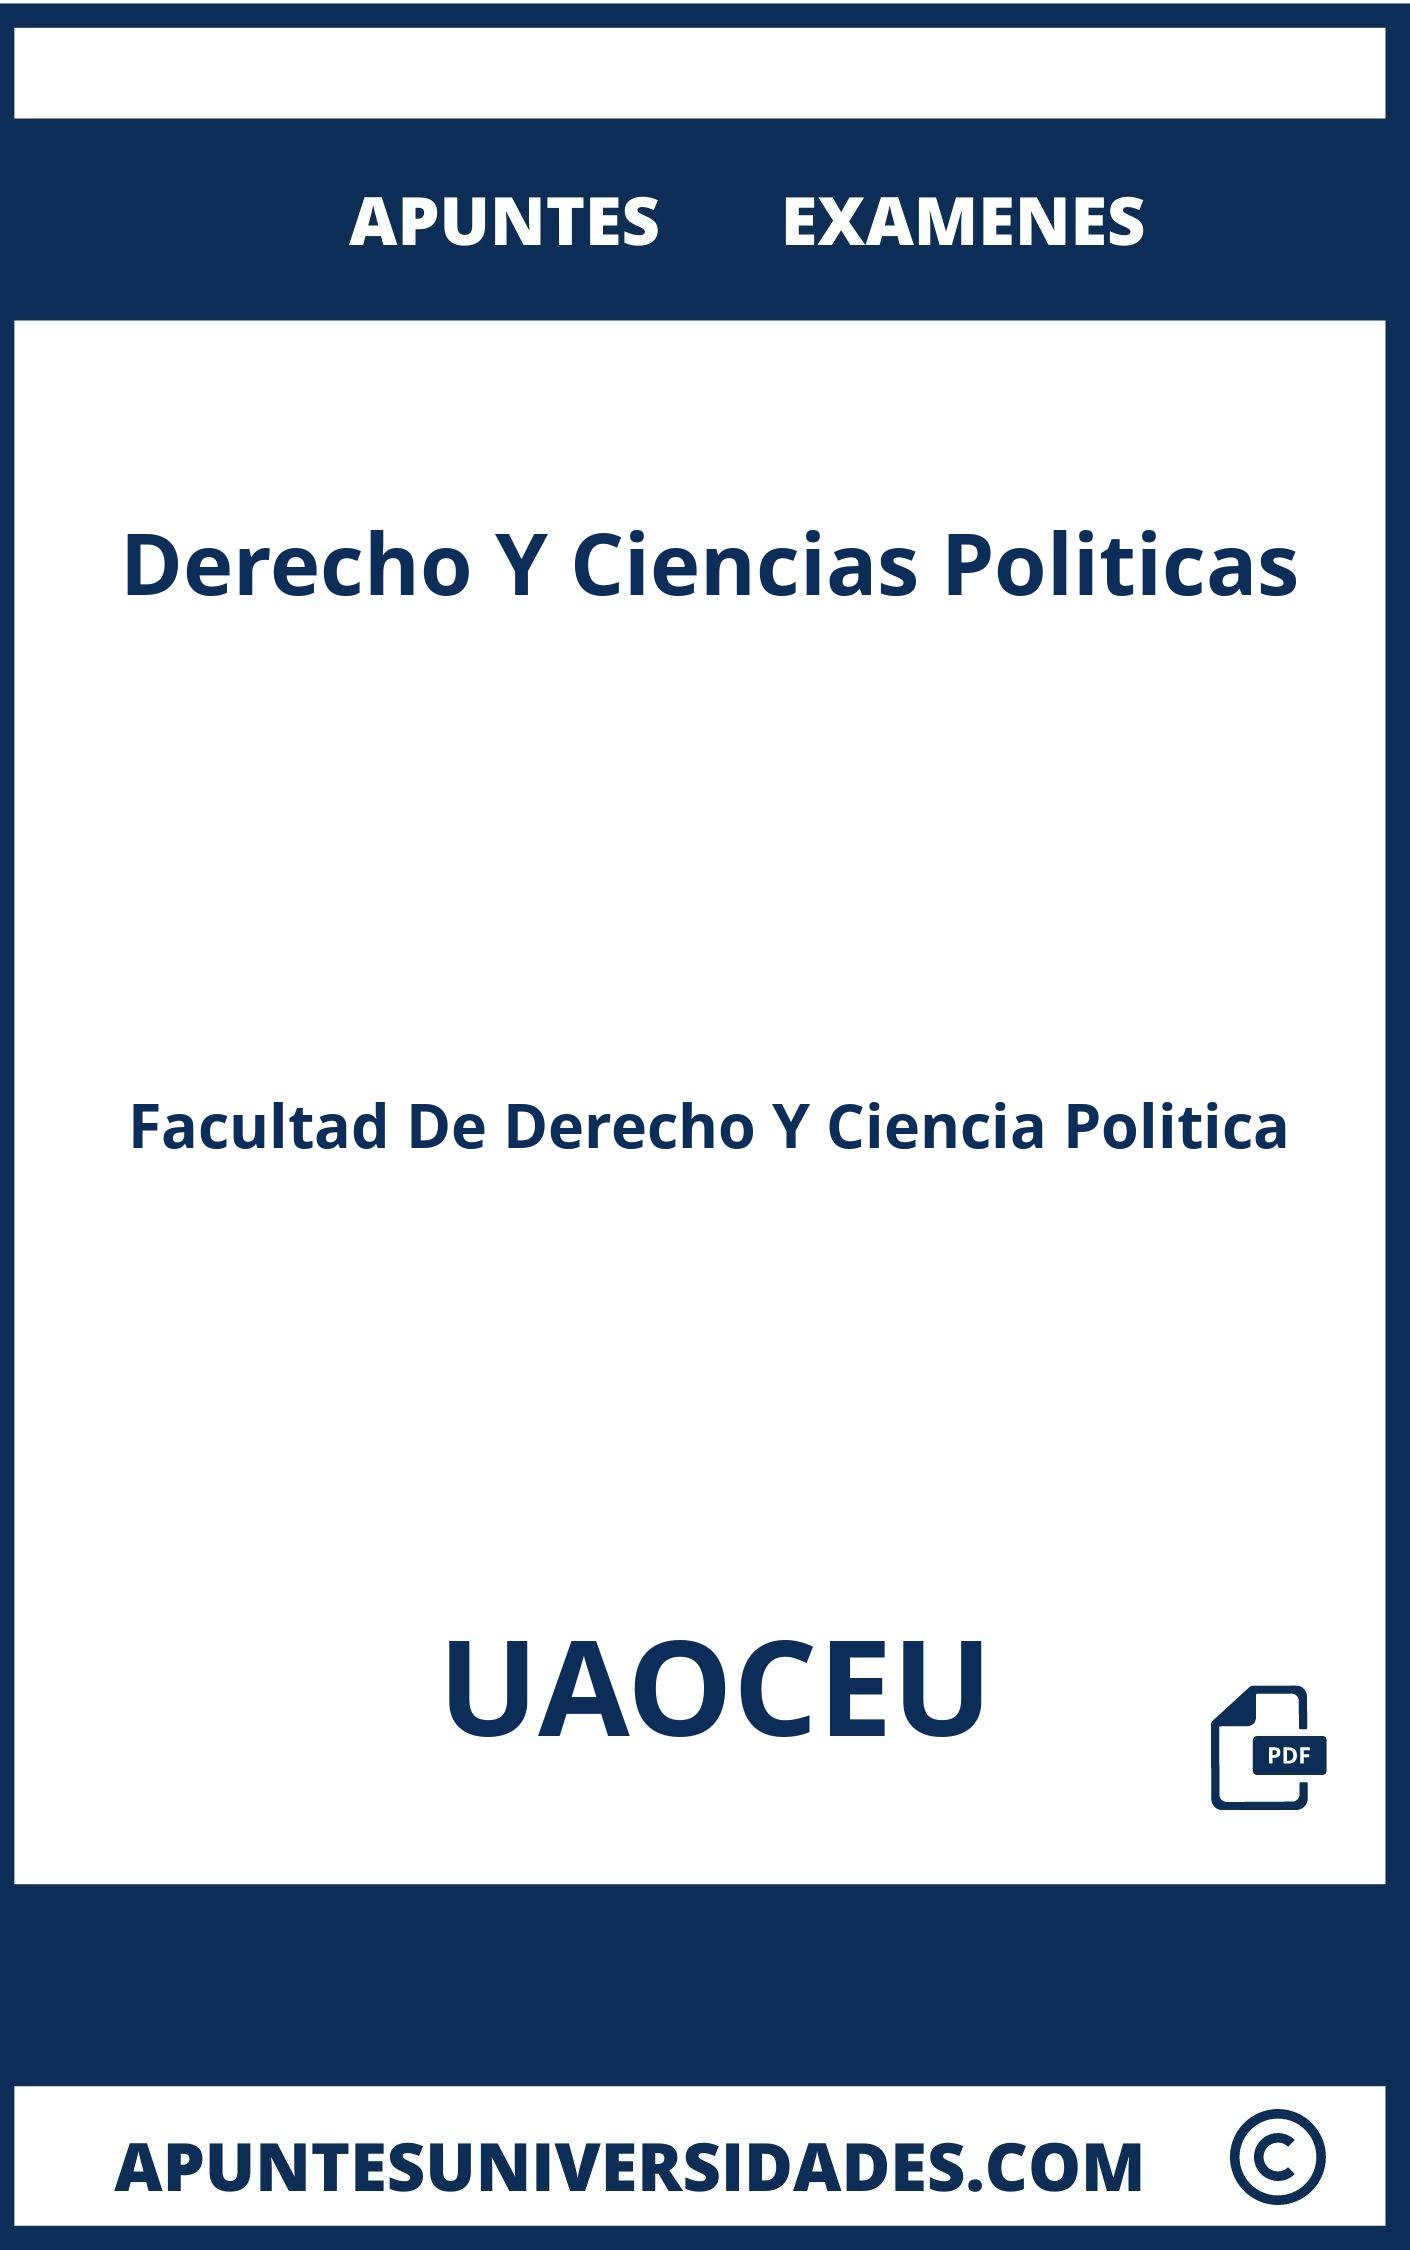 Examenes y Apuntes Derecho Y Ciencias Politicas UAOCEU